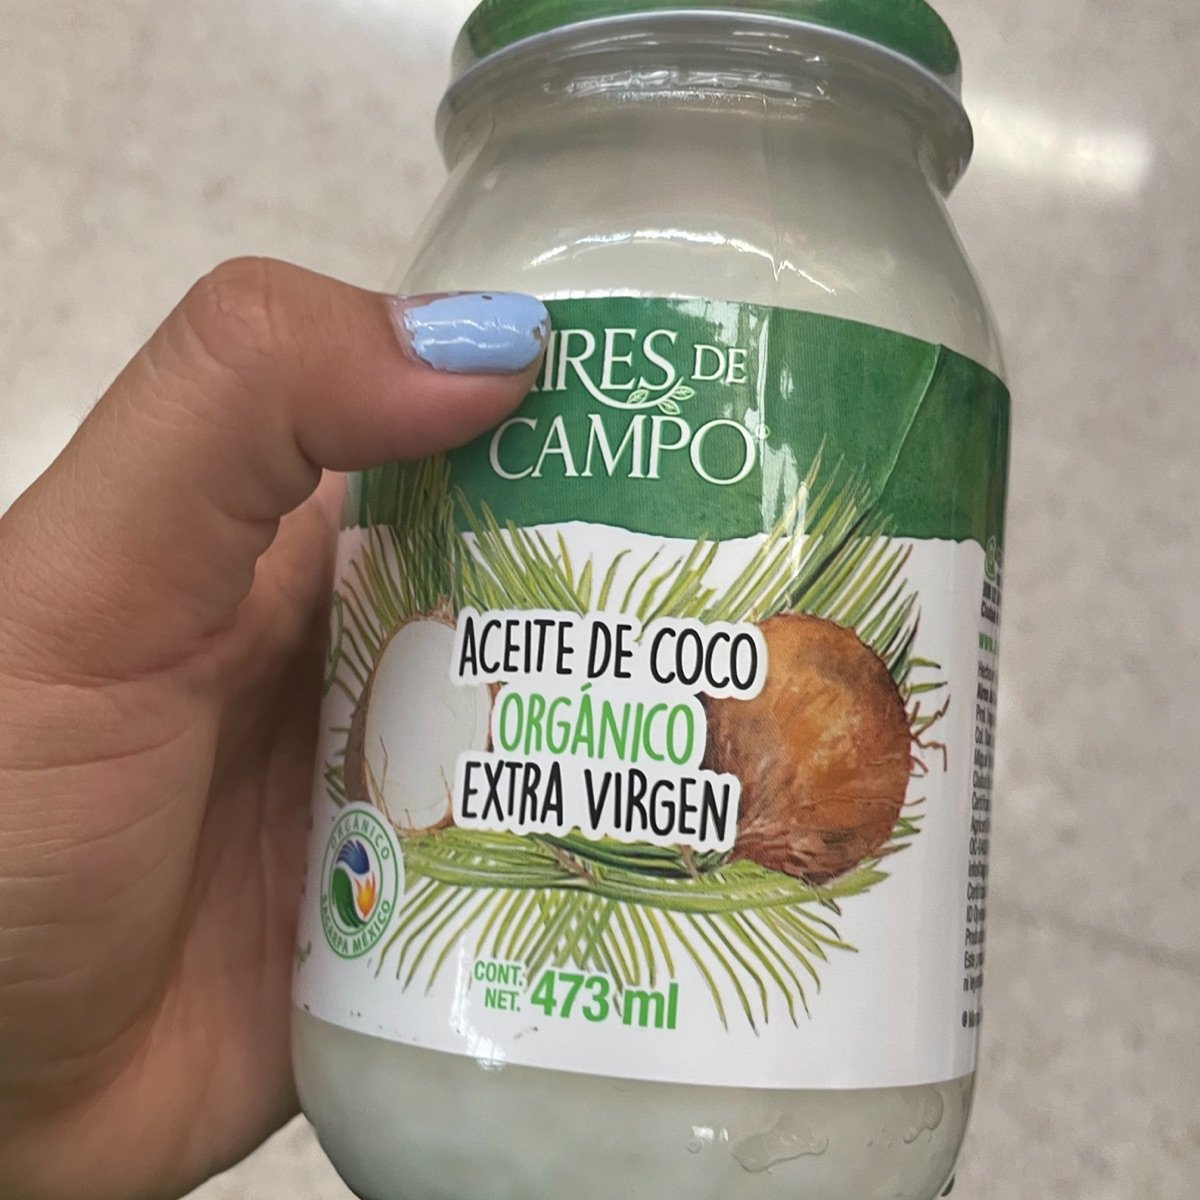 Aceite de Coco Orgánico Extra Virgen – Aires de Campo